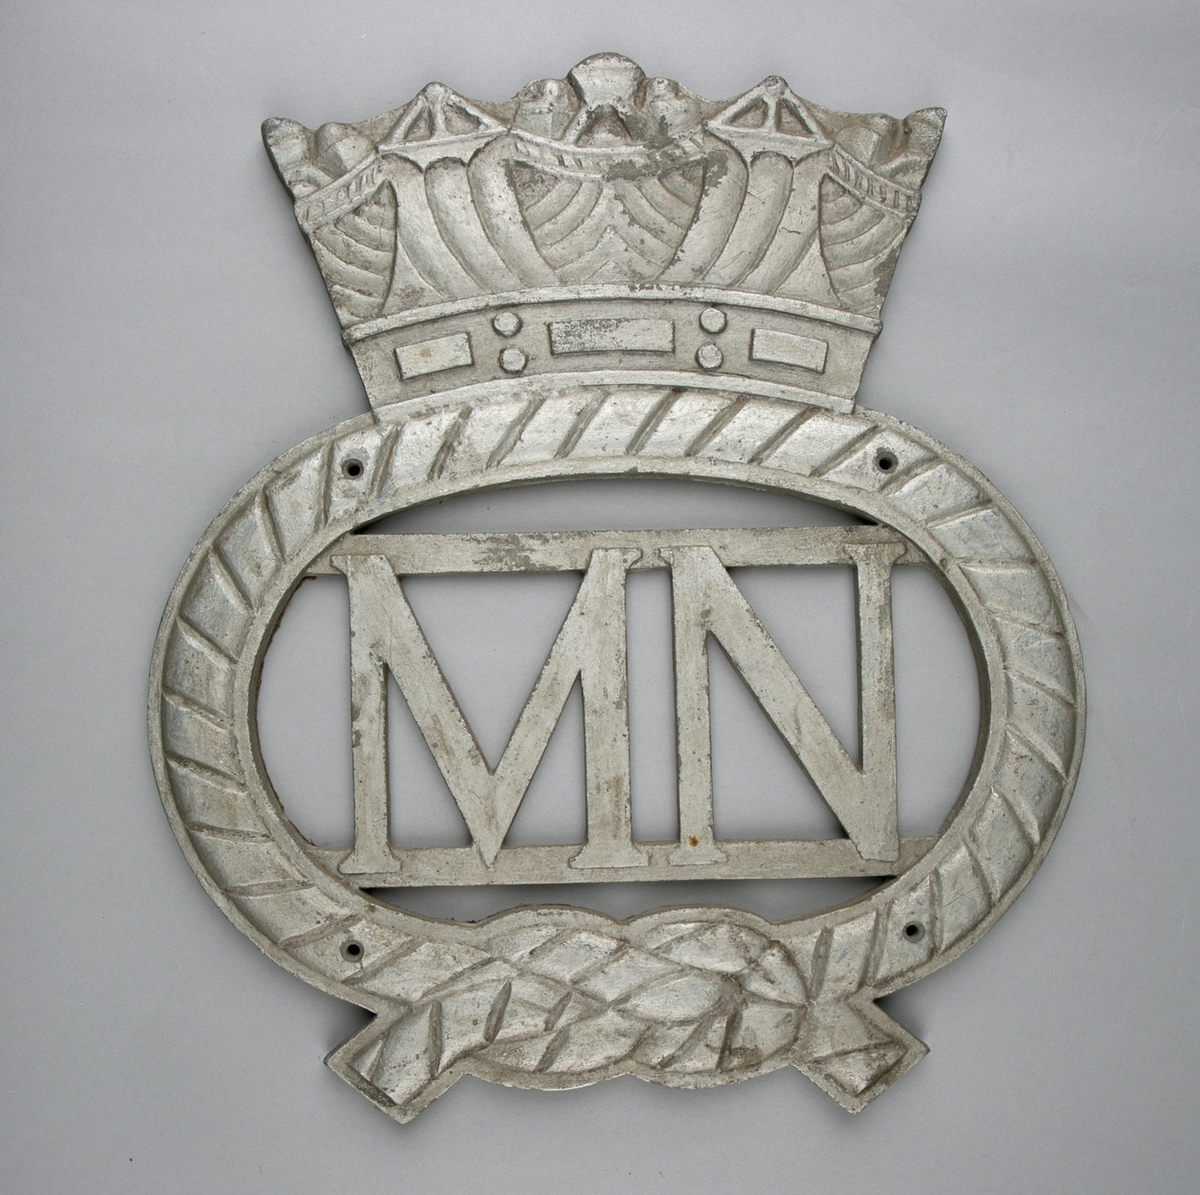 Ovalt emblem med krone. I senter bokstavene MN. Emblem ser ut som tau med båtsmannsknop.